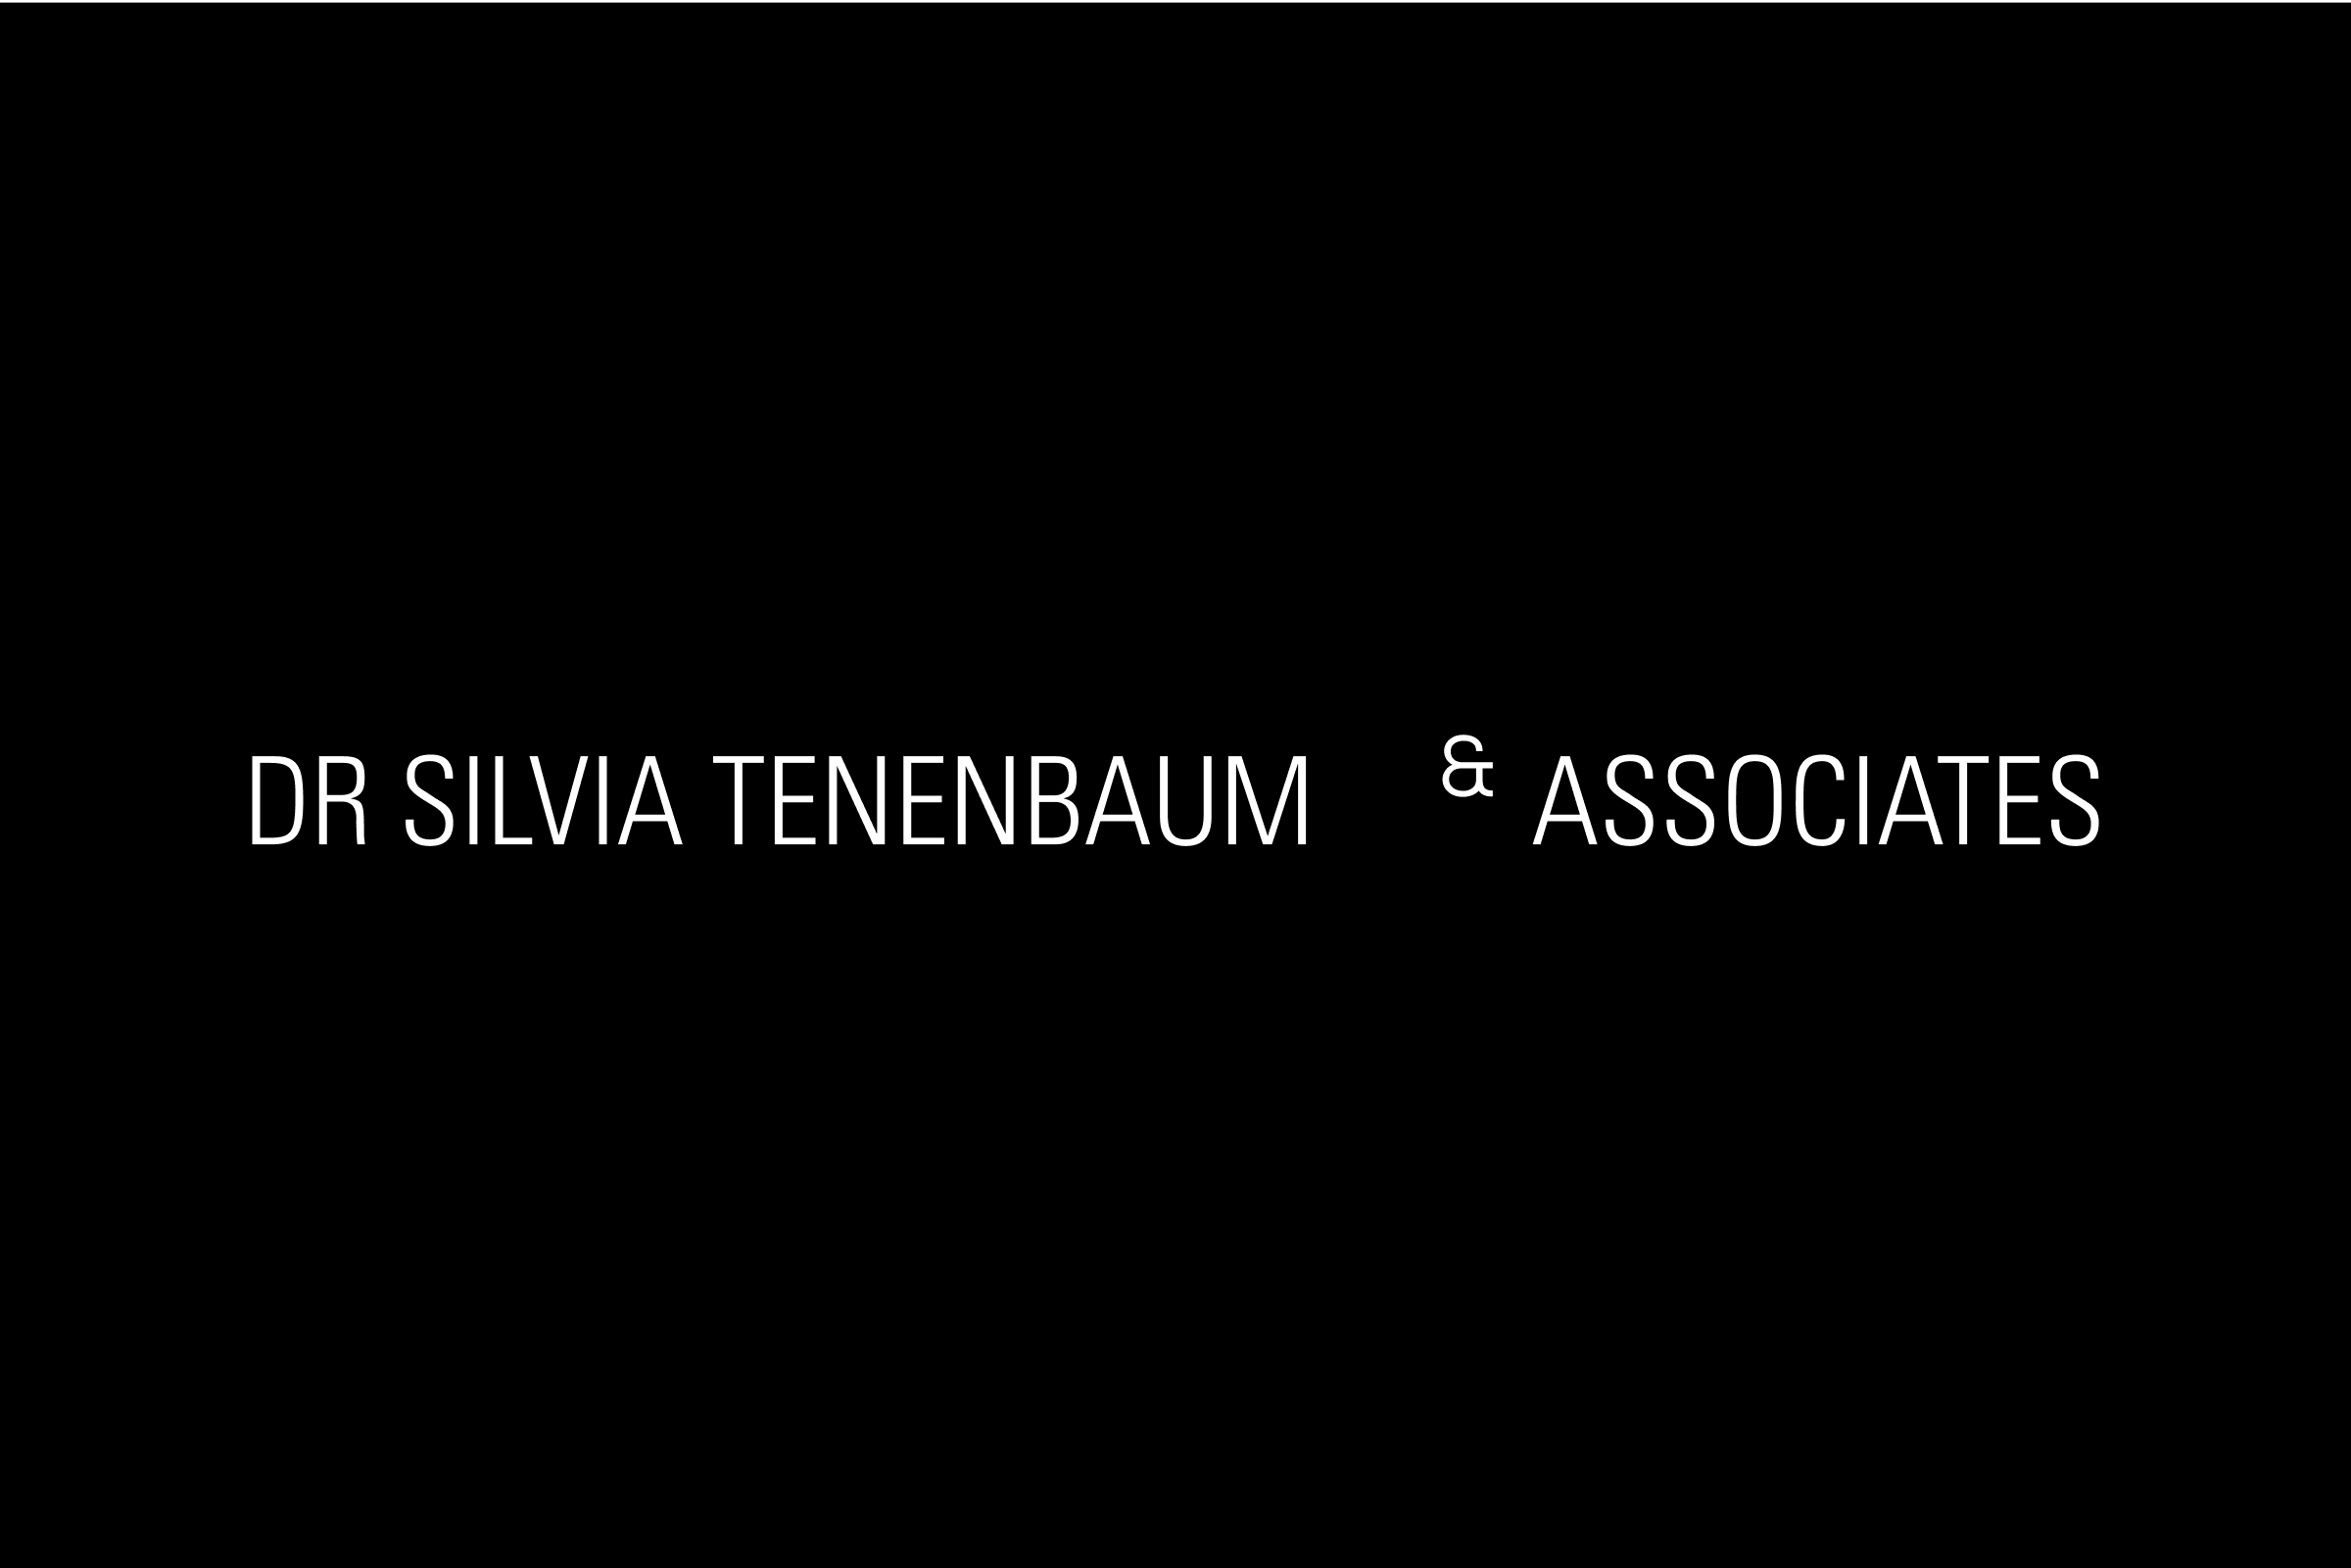 simon-p-coyle-branding-logo-design-2016-dr-silvia-tenenbaum-and-associates